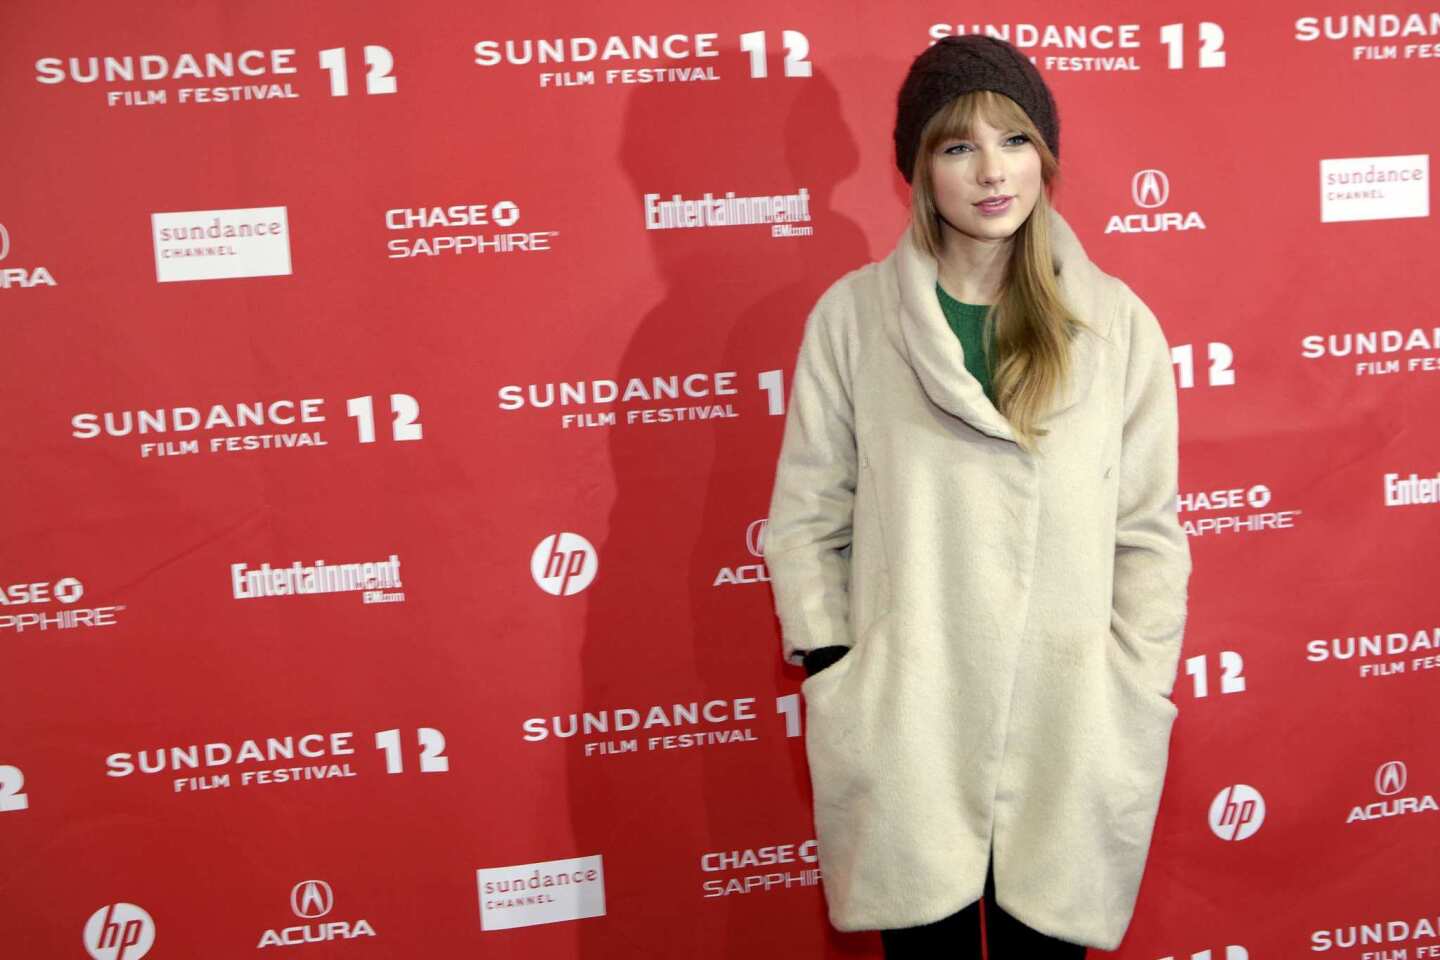 Sundance Film Festival 2012